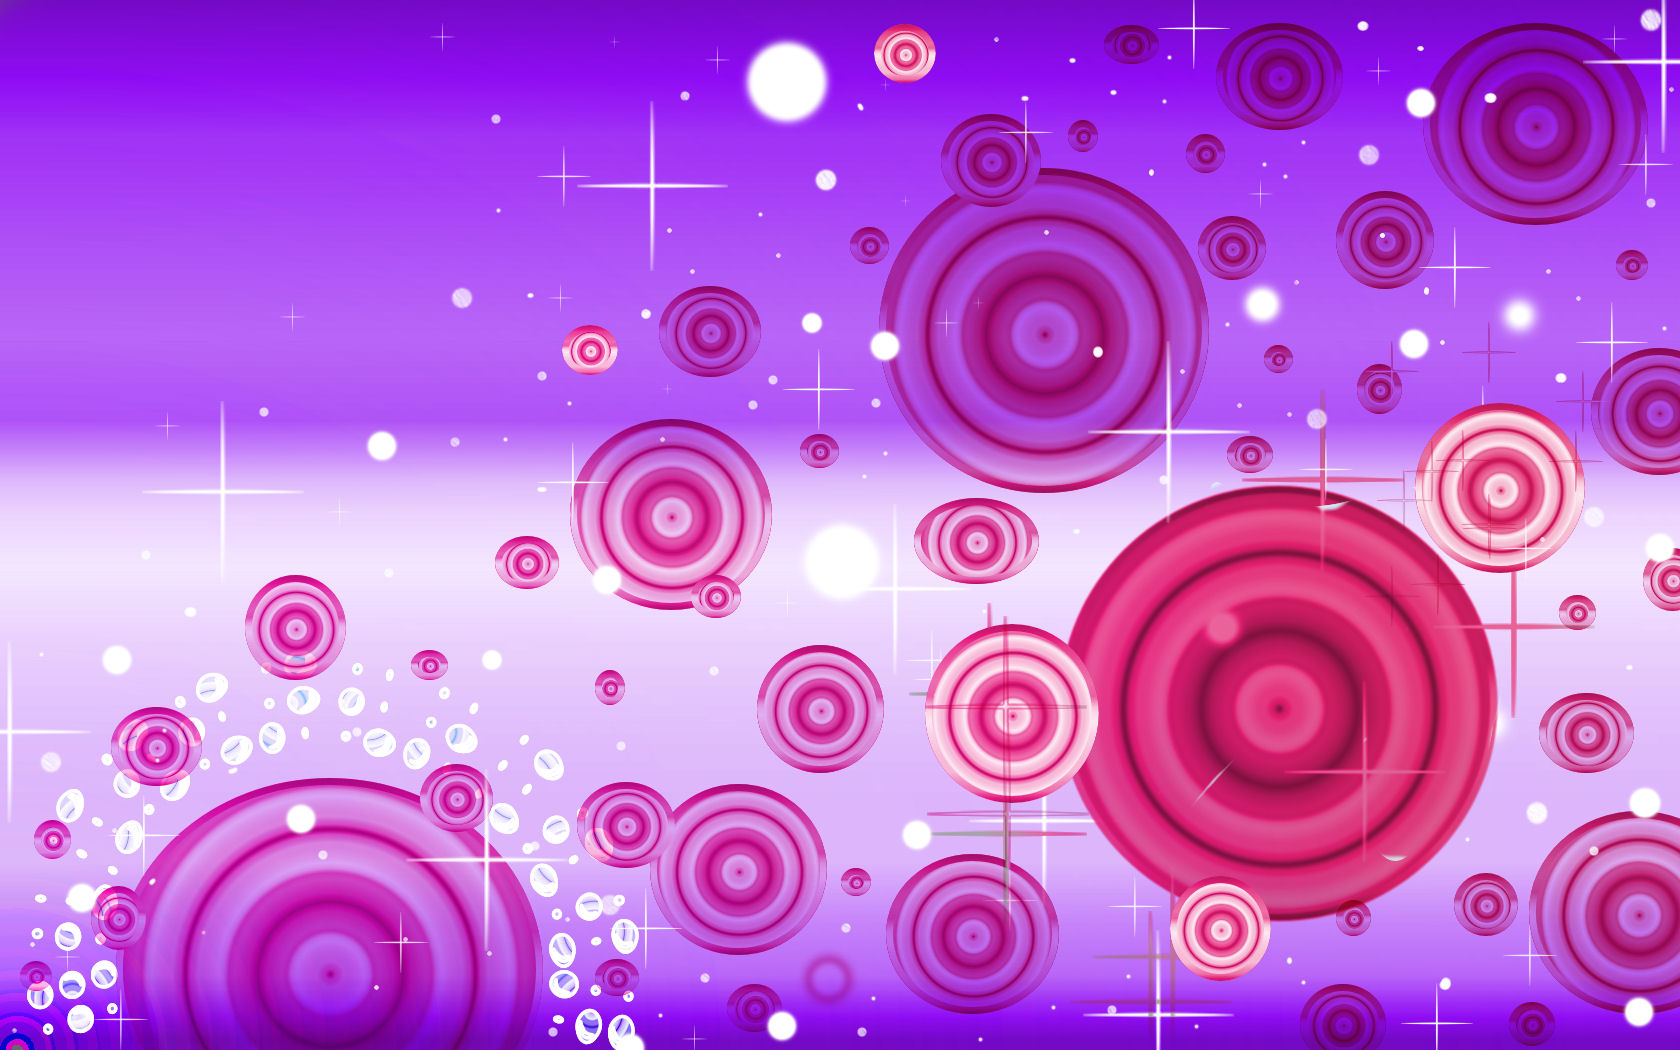 Sookie Pink Purple Ripple Wall by sookiesooker on